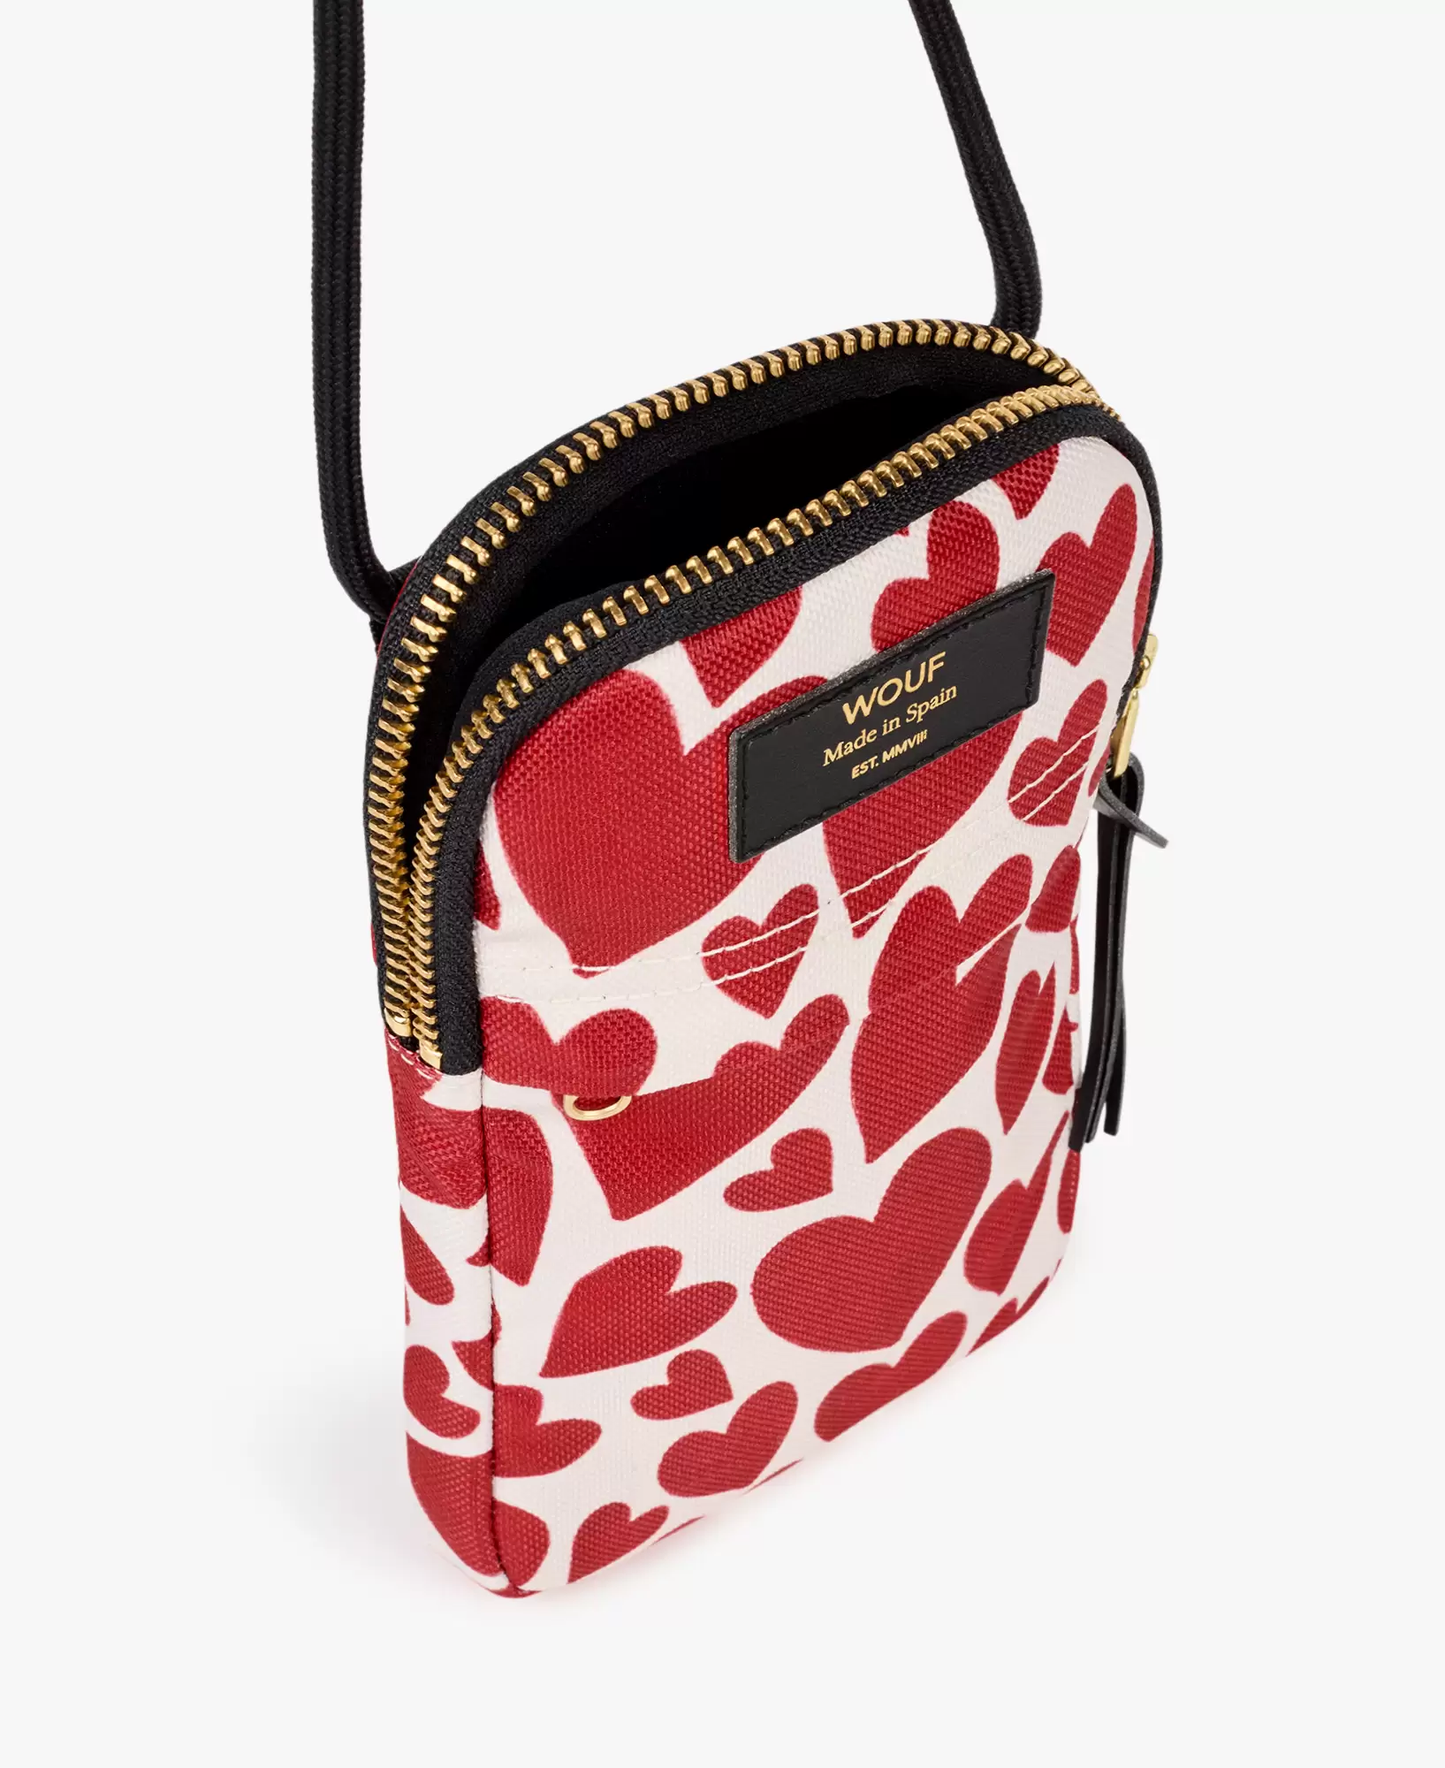 Tasche - Amour Phone Bag von Wouf